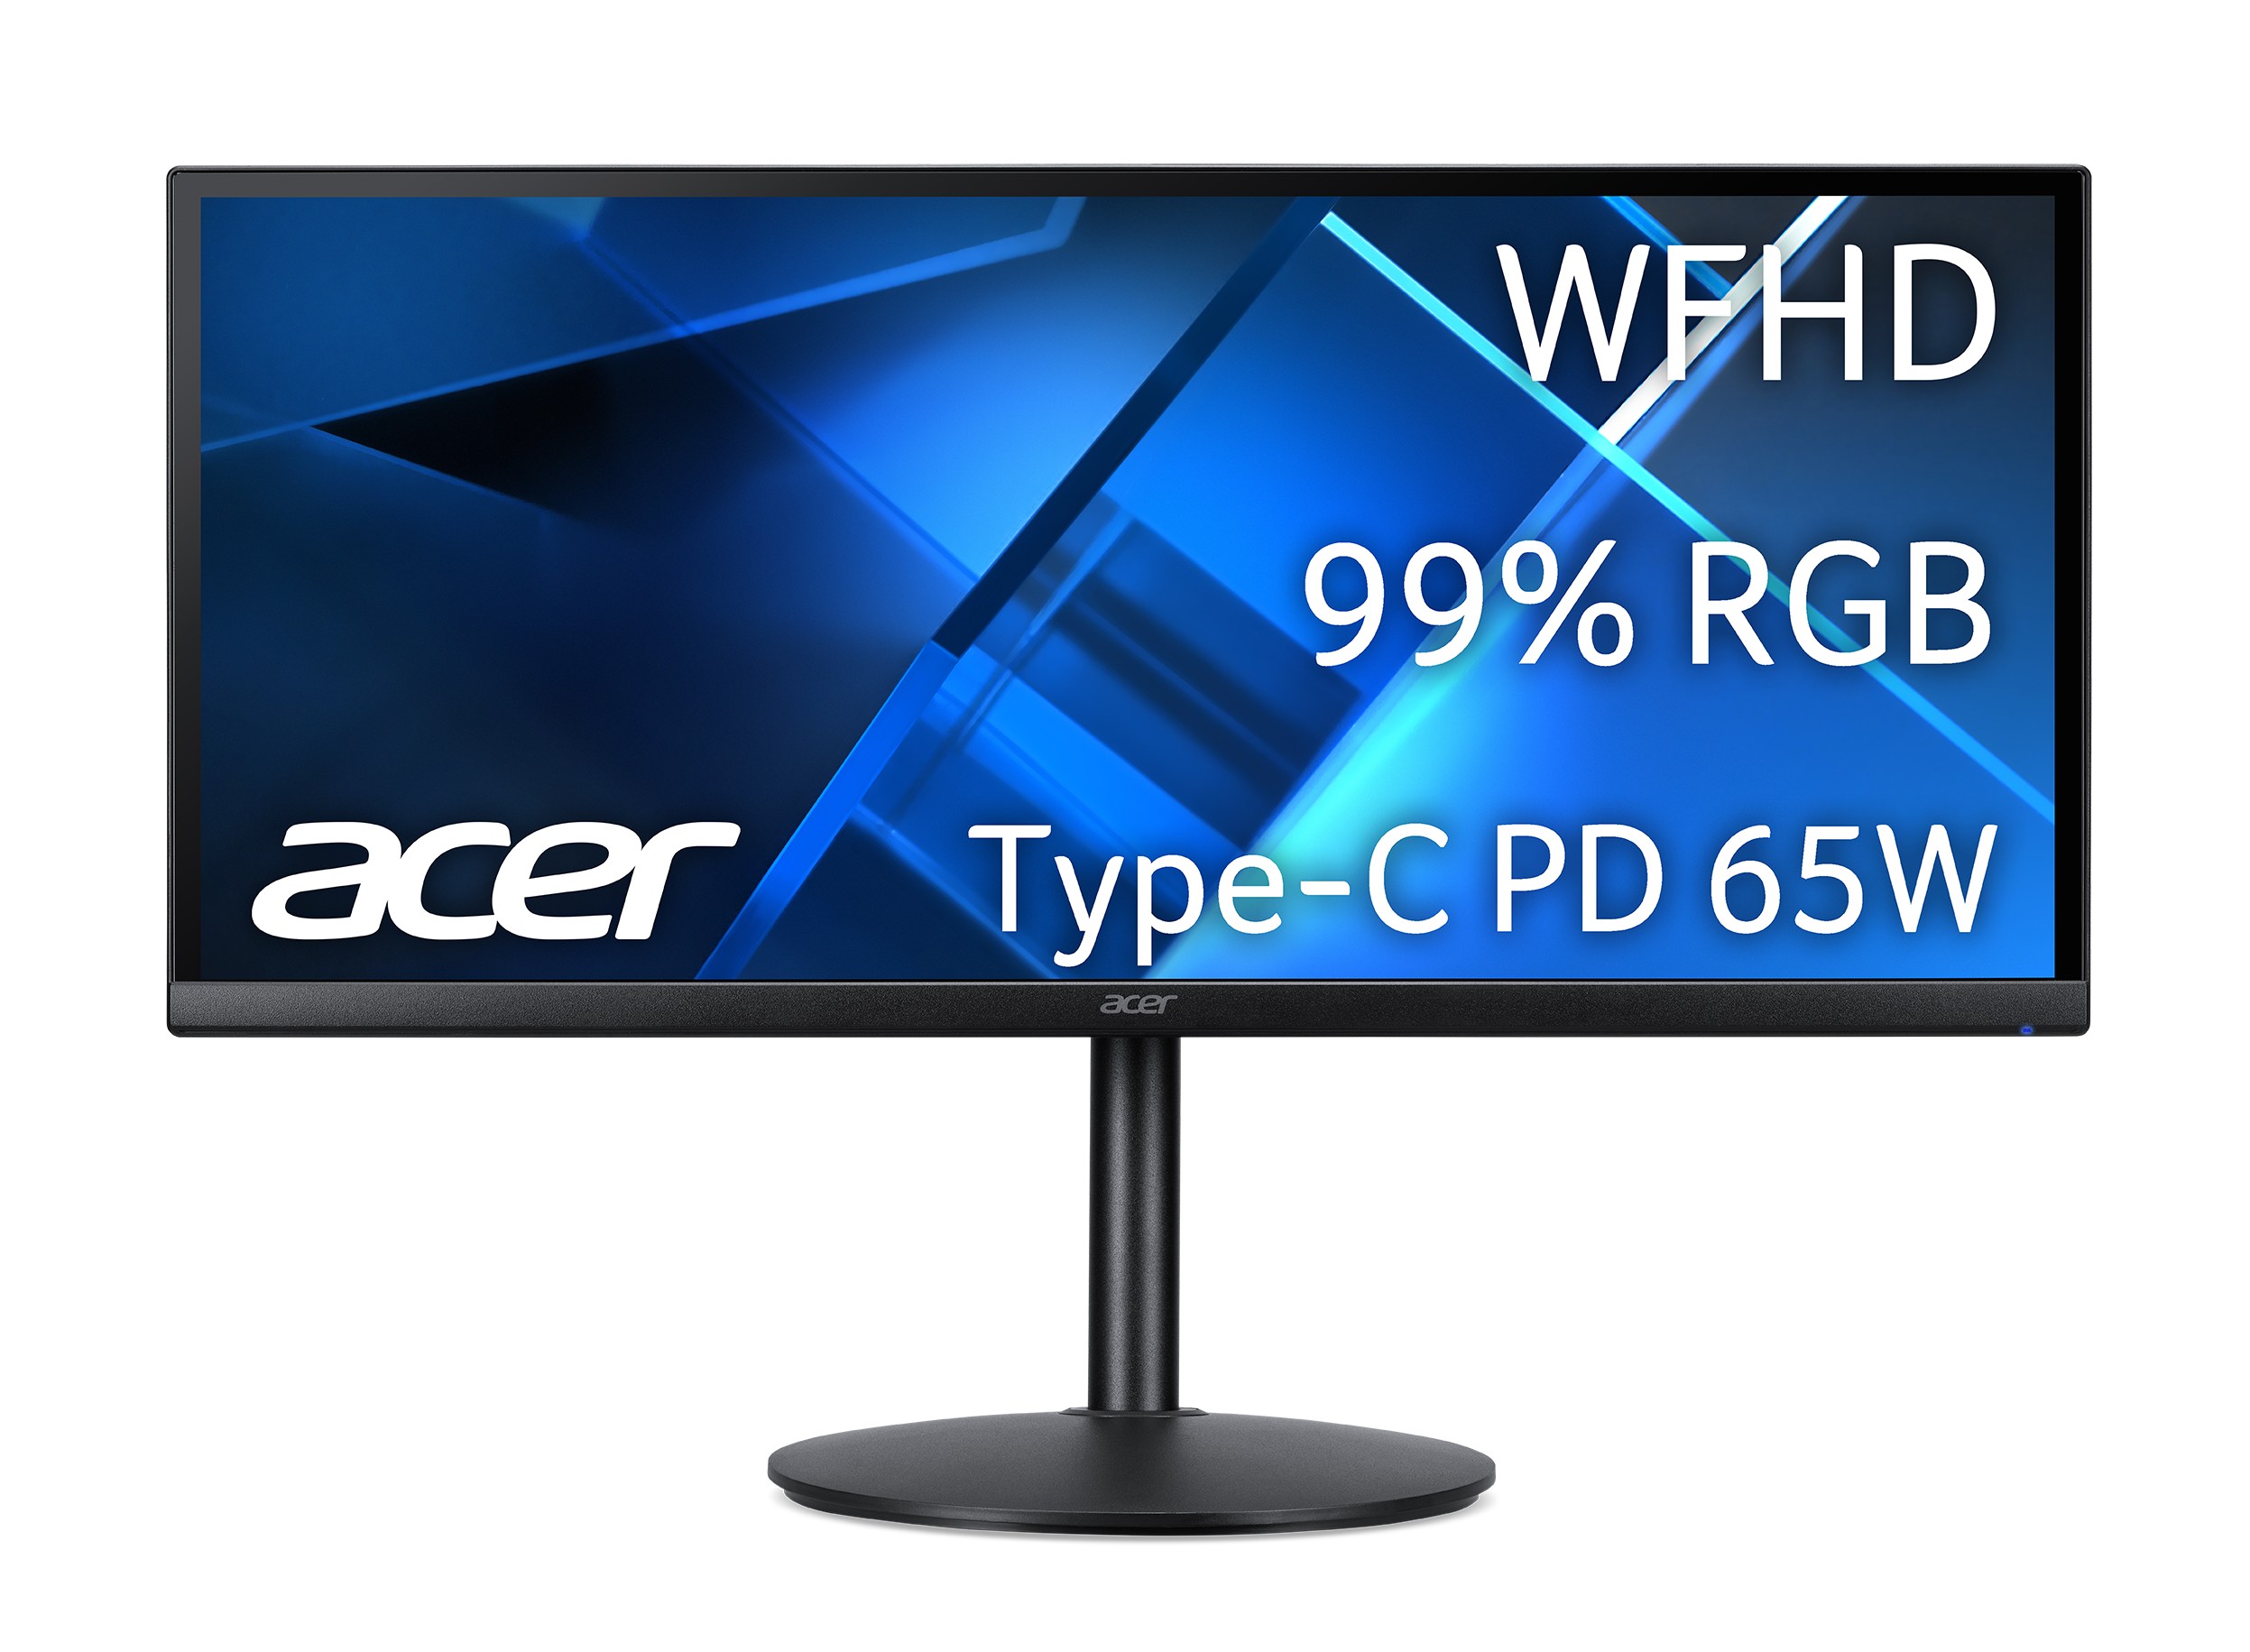 Acer CB292CU typec featurewp 01